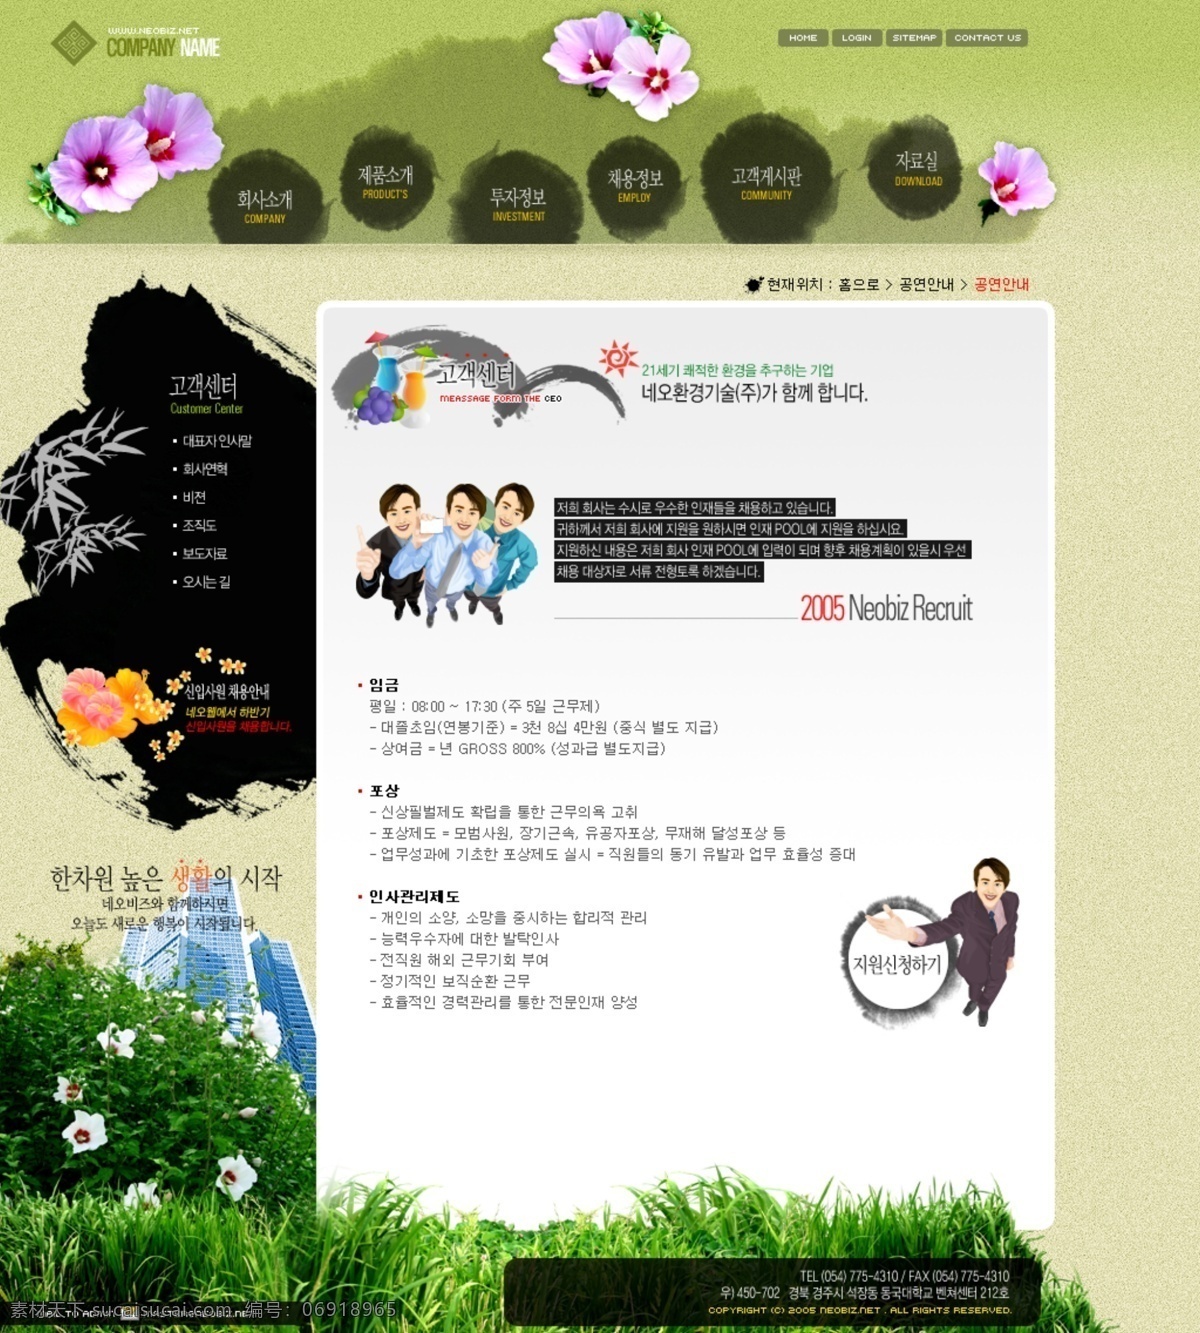 家居 模板 韩国模板 家居模板 界面设计 网页设计元素 韩国公司模板 人物生活模板 休闲场景模板 建站模板 免费 模板下载 网页素材 网页模板